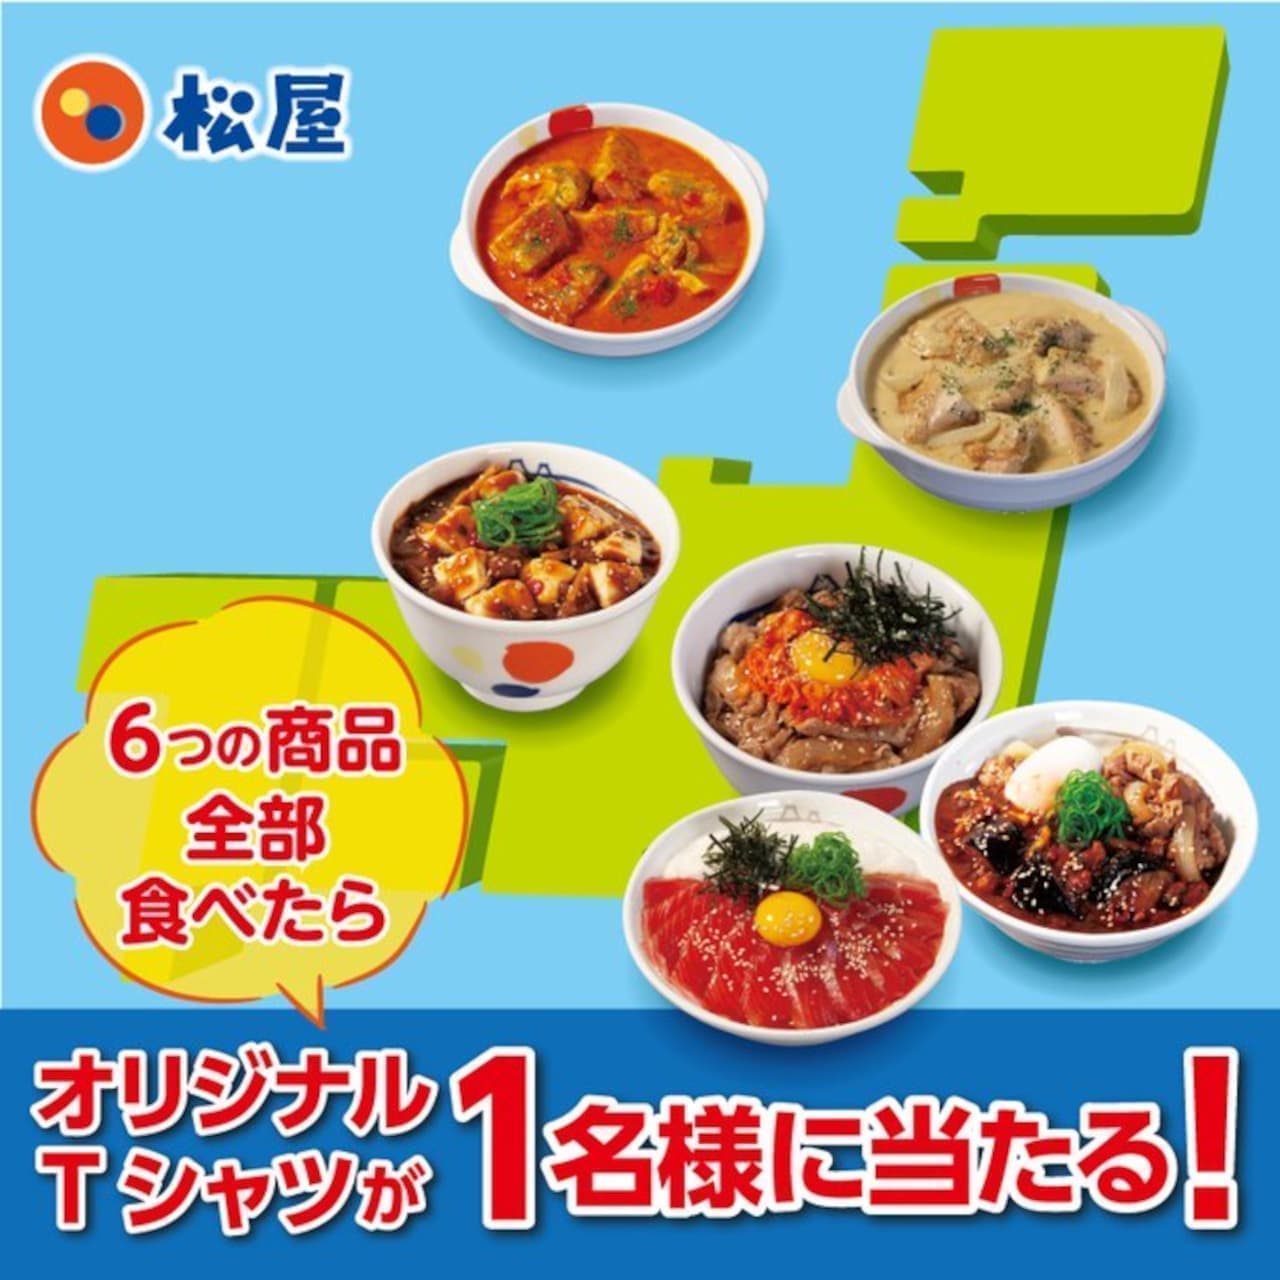 Matsuya store limited menu